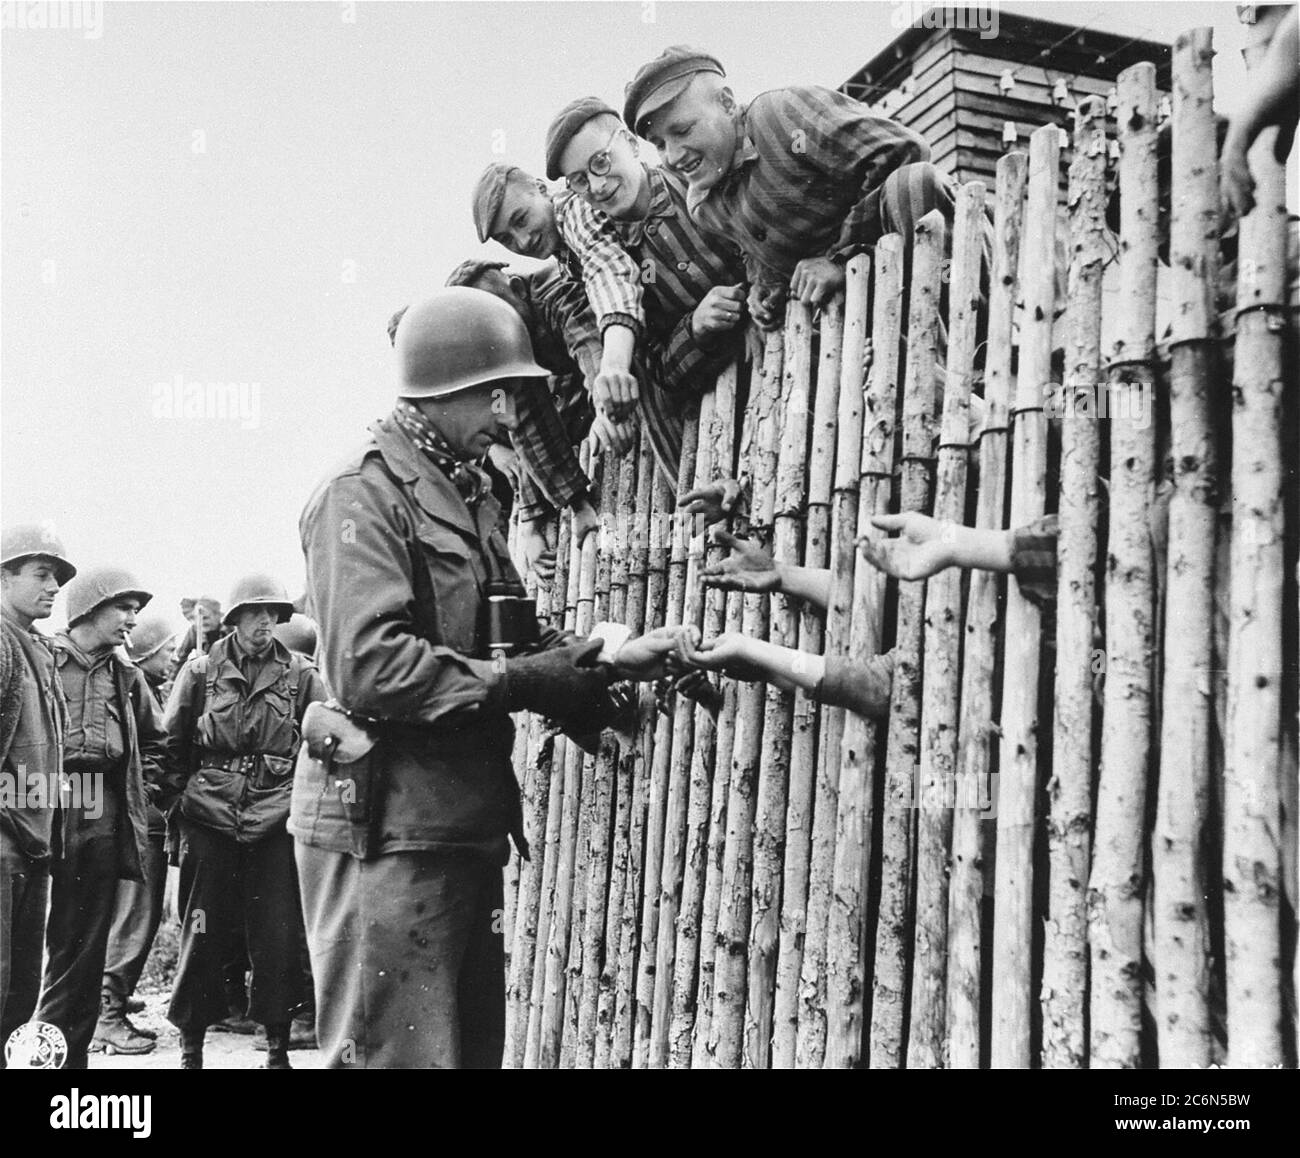 Le caporal Larry Matinsk de l'armée américaine met des cigarettes dans les mains étendues de prisonniers nouvellement libérés derrière un stock dans le camp de concentration d'Allach, près de Dachau Allemagne, le 30 avril 1945. On trouve également sur la photo les soldats américains Arthur Toratti et George Babel (deuxième et troisième à partir de la gauche). Allach était un sous-camp du camp de concentration de Dachau. Des soldats américains de la 7e Armée des États-Unis, y compris des membres de la 42e infanterie et de la 45e infanterie et de la 20e division des soldats de l'armée, ont participé à la libération de l'subcamp. Le principal camp de concentration de Dachau comptait plus de 120 sous-camps dans la région Banque D'Images